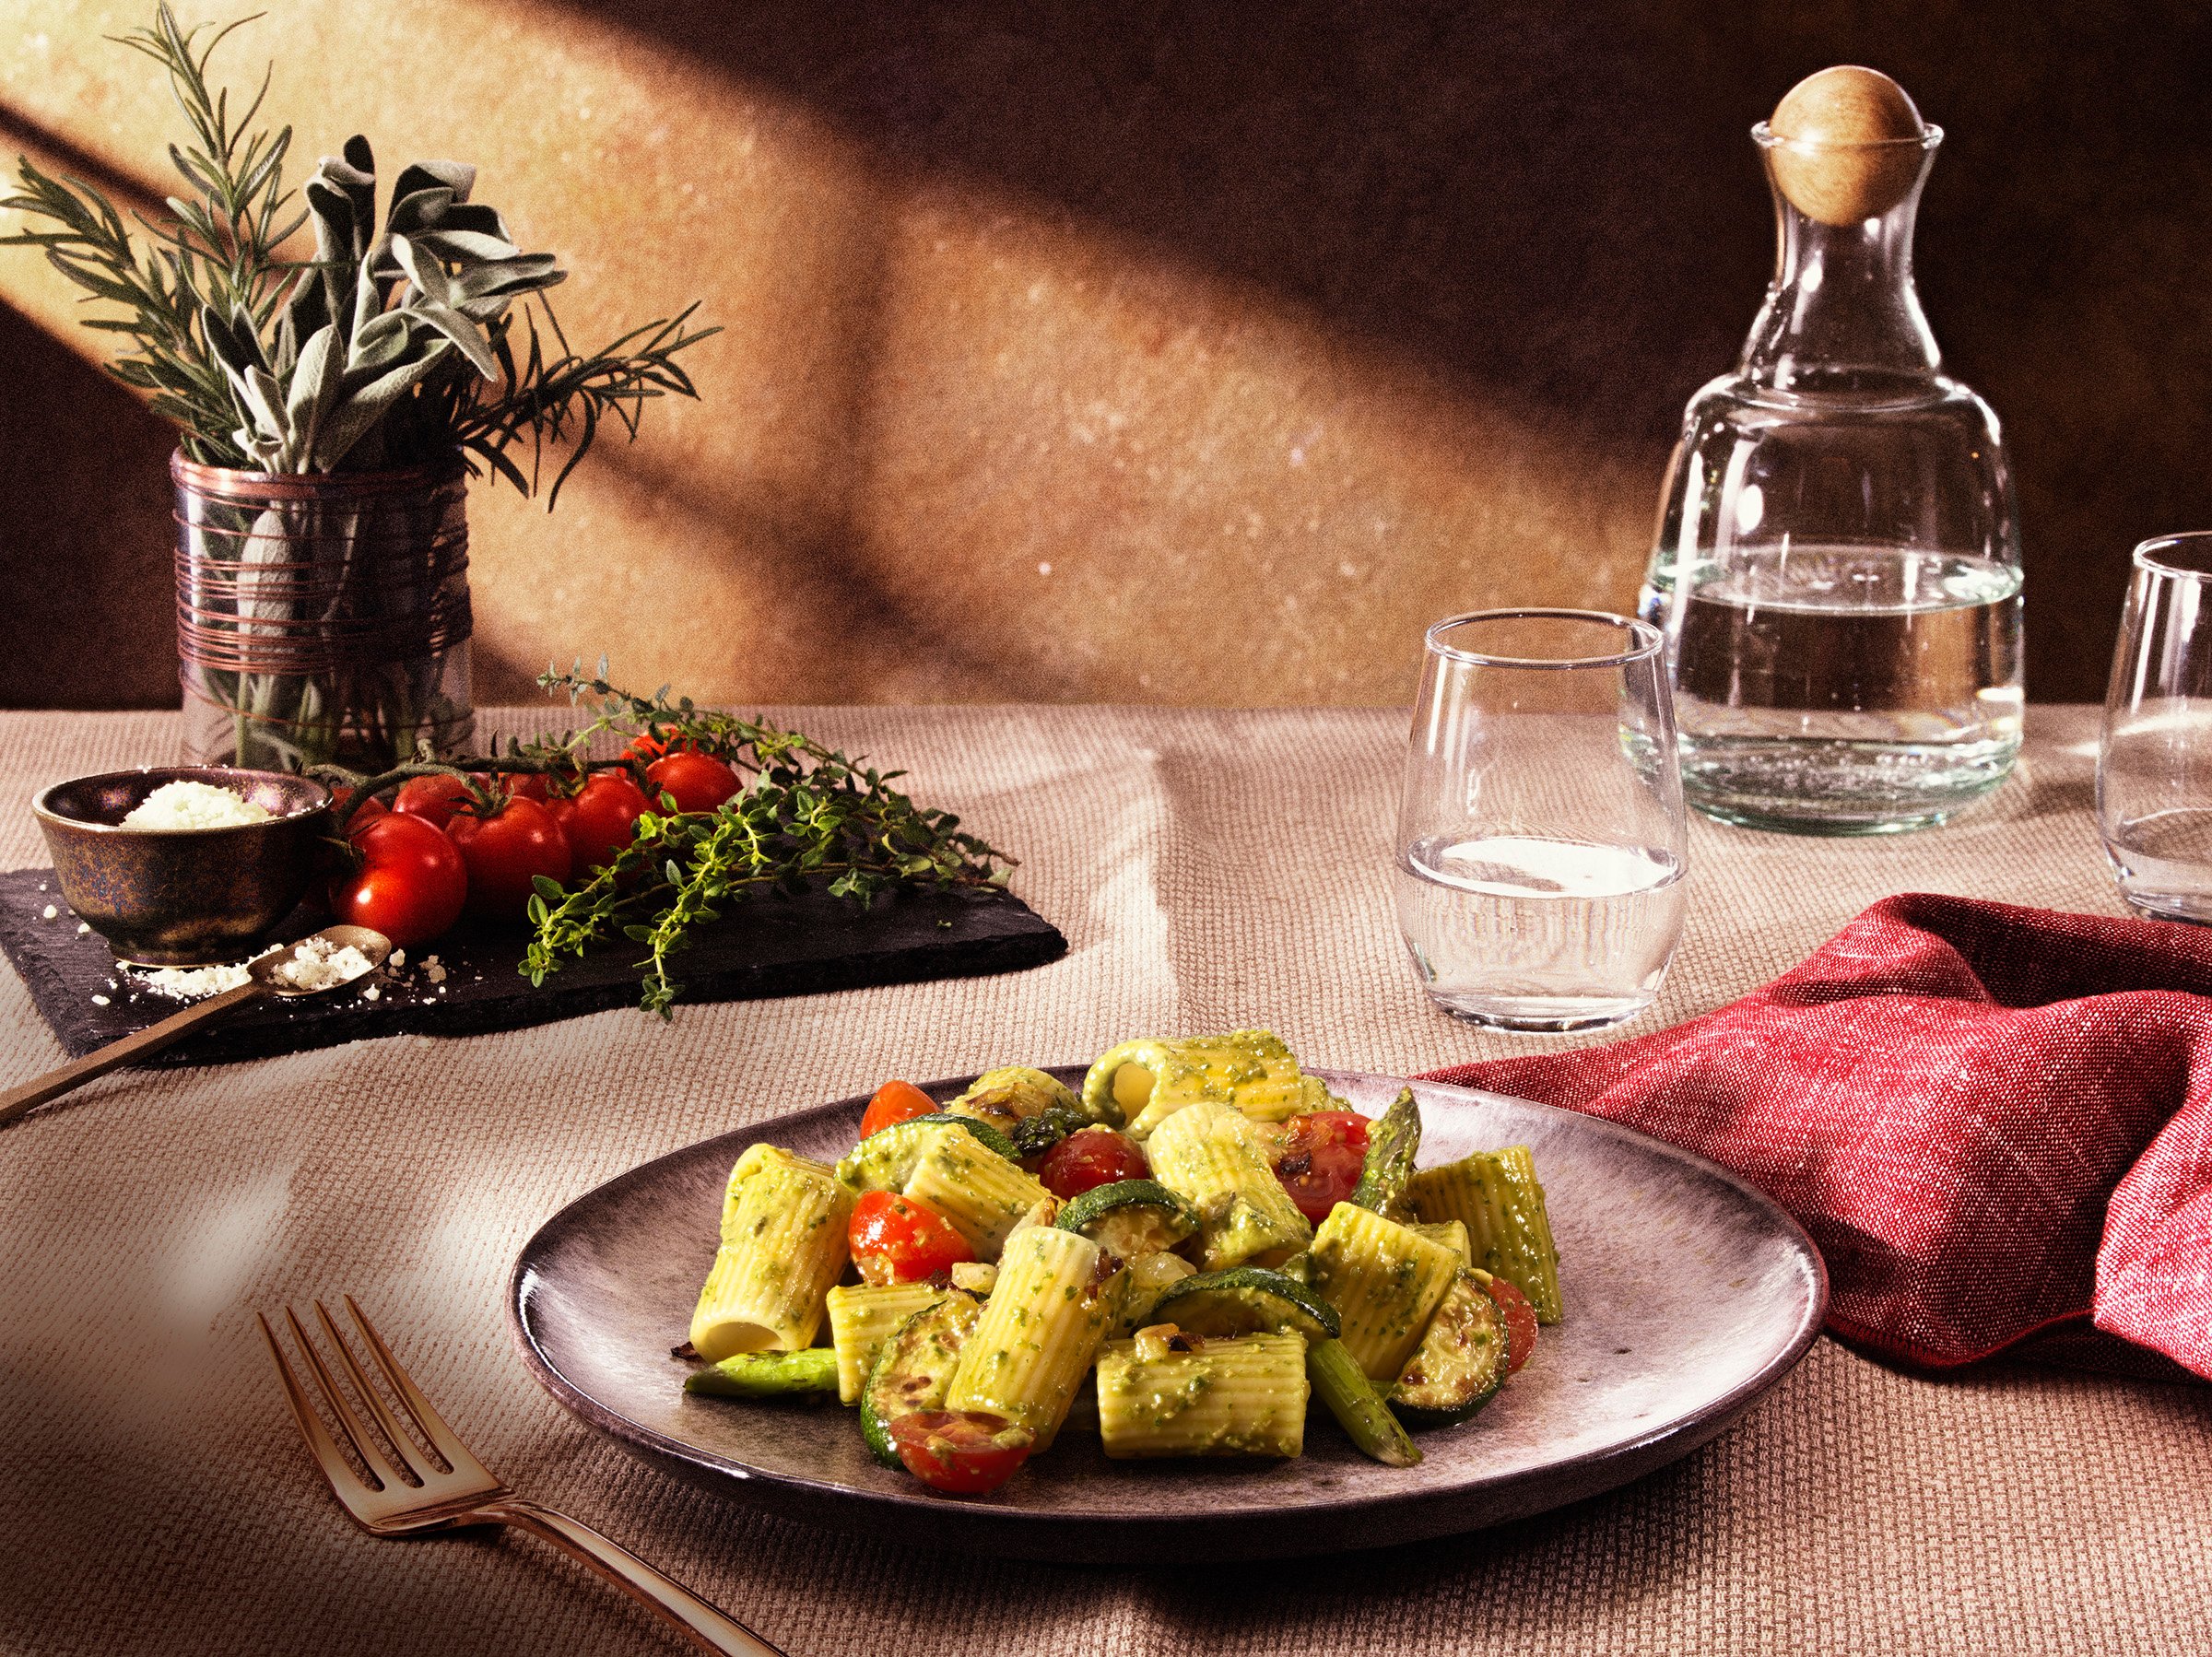 Barilla Al Bronzo Mezzi Rigatoni with Pesto & Roasted Vegetables